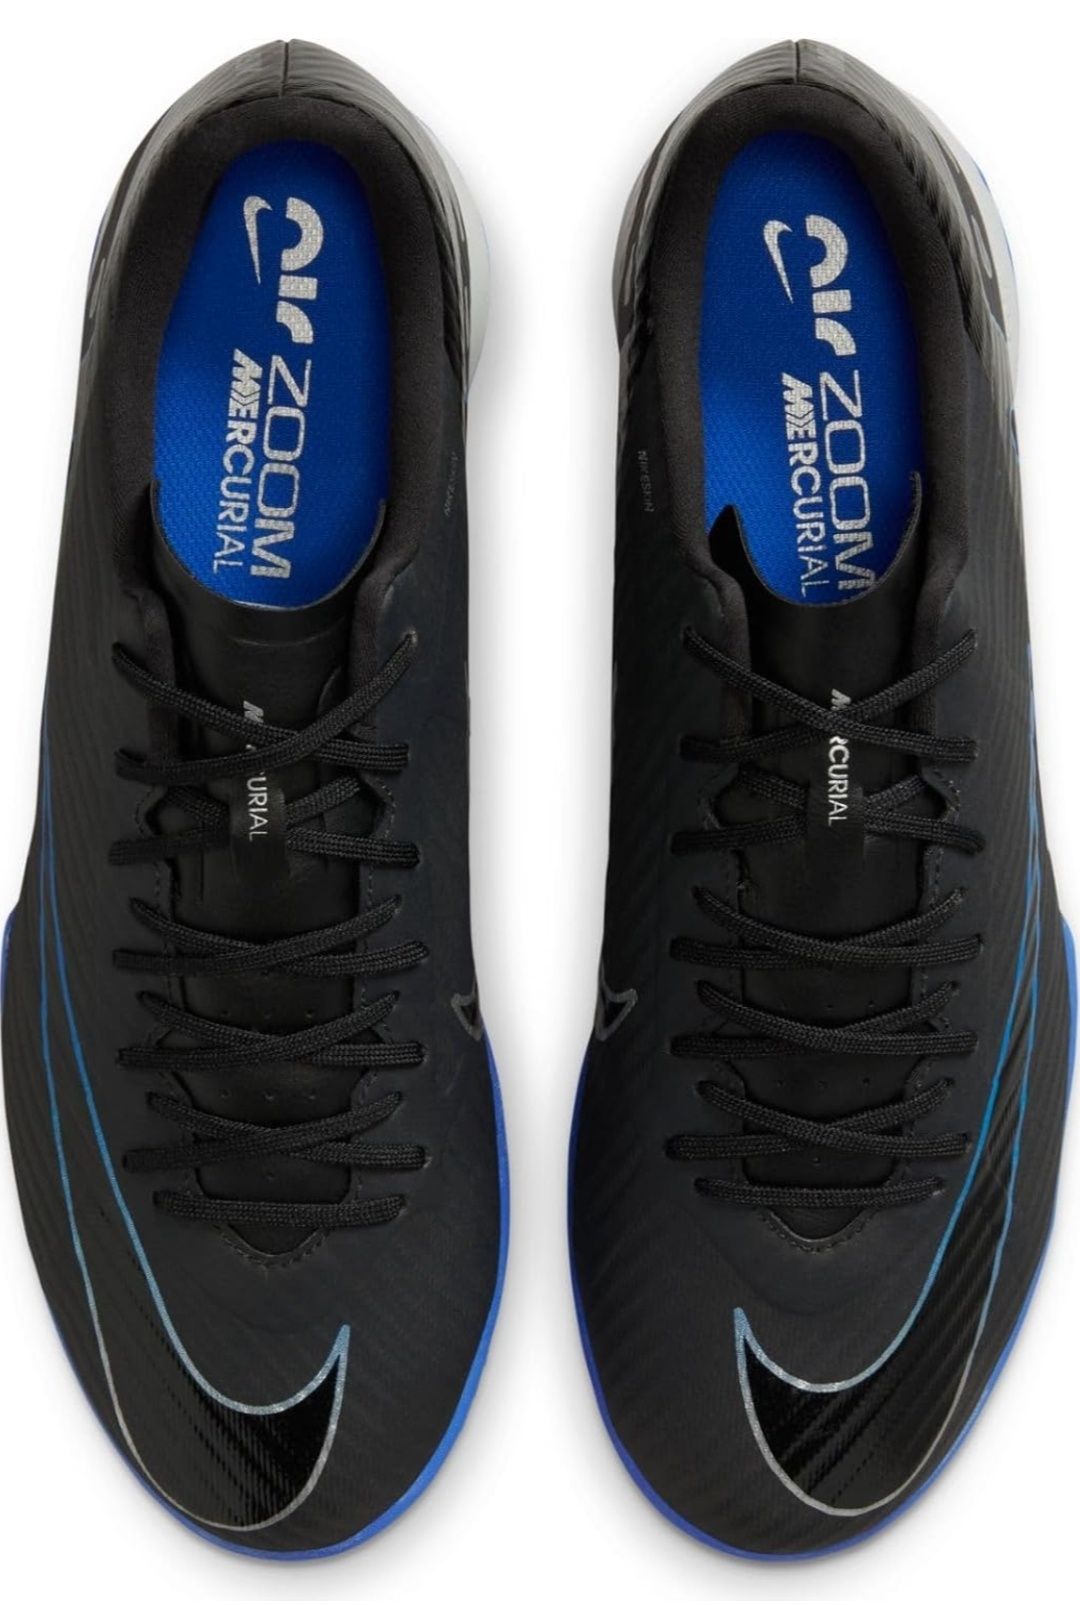 Nowe buty halowe Nike Vapor 15 Academy IC  rozm. 42.5